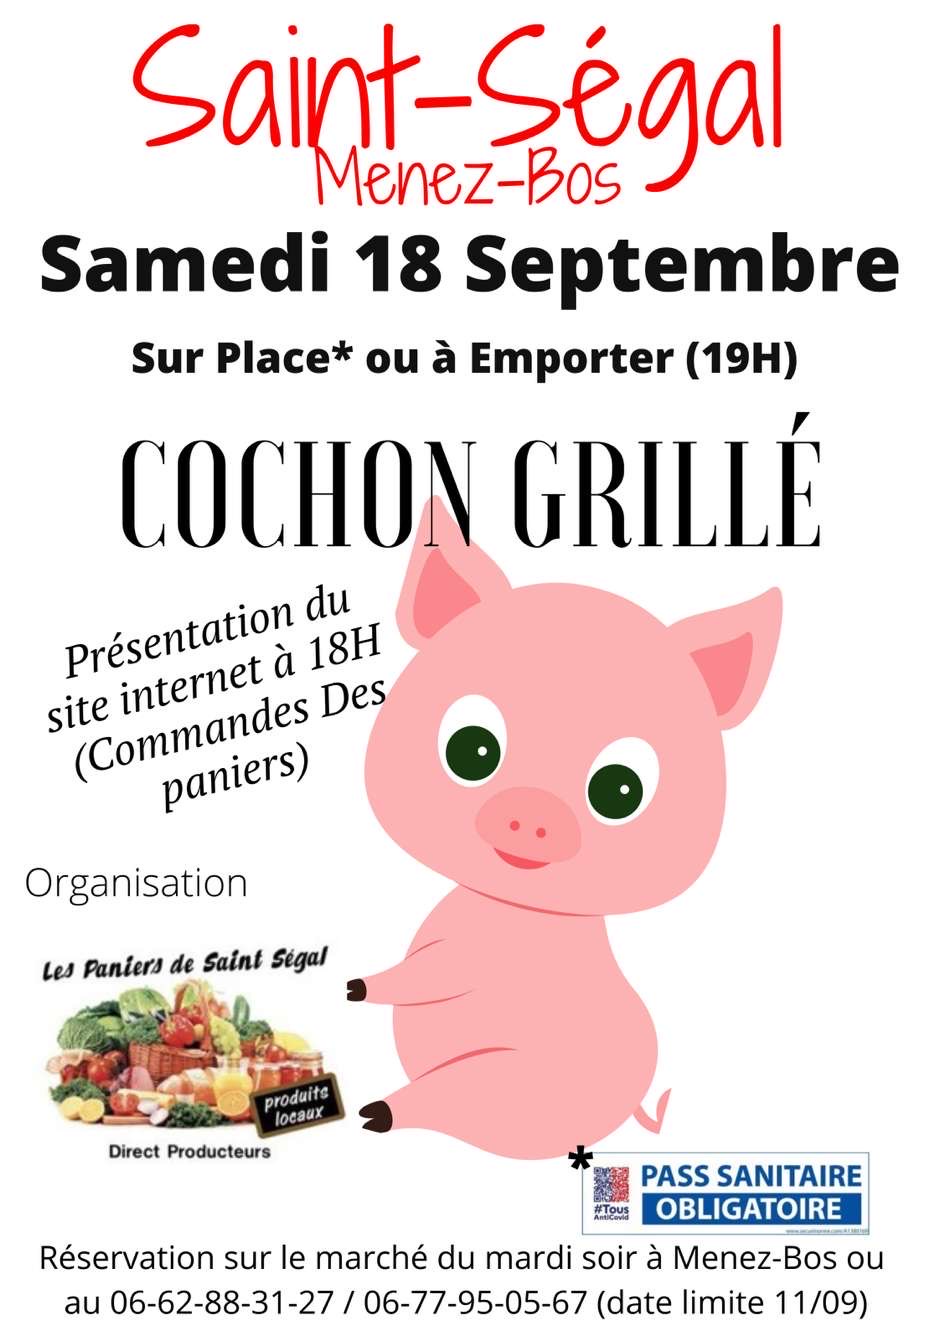 Cochon grillé 18 Sept 2021